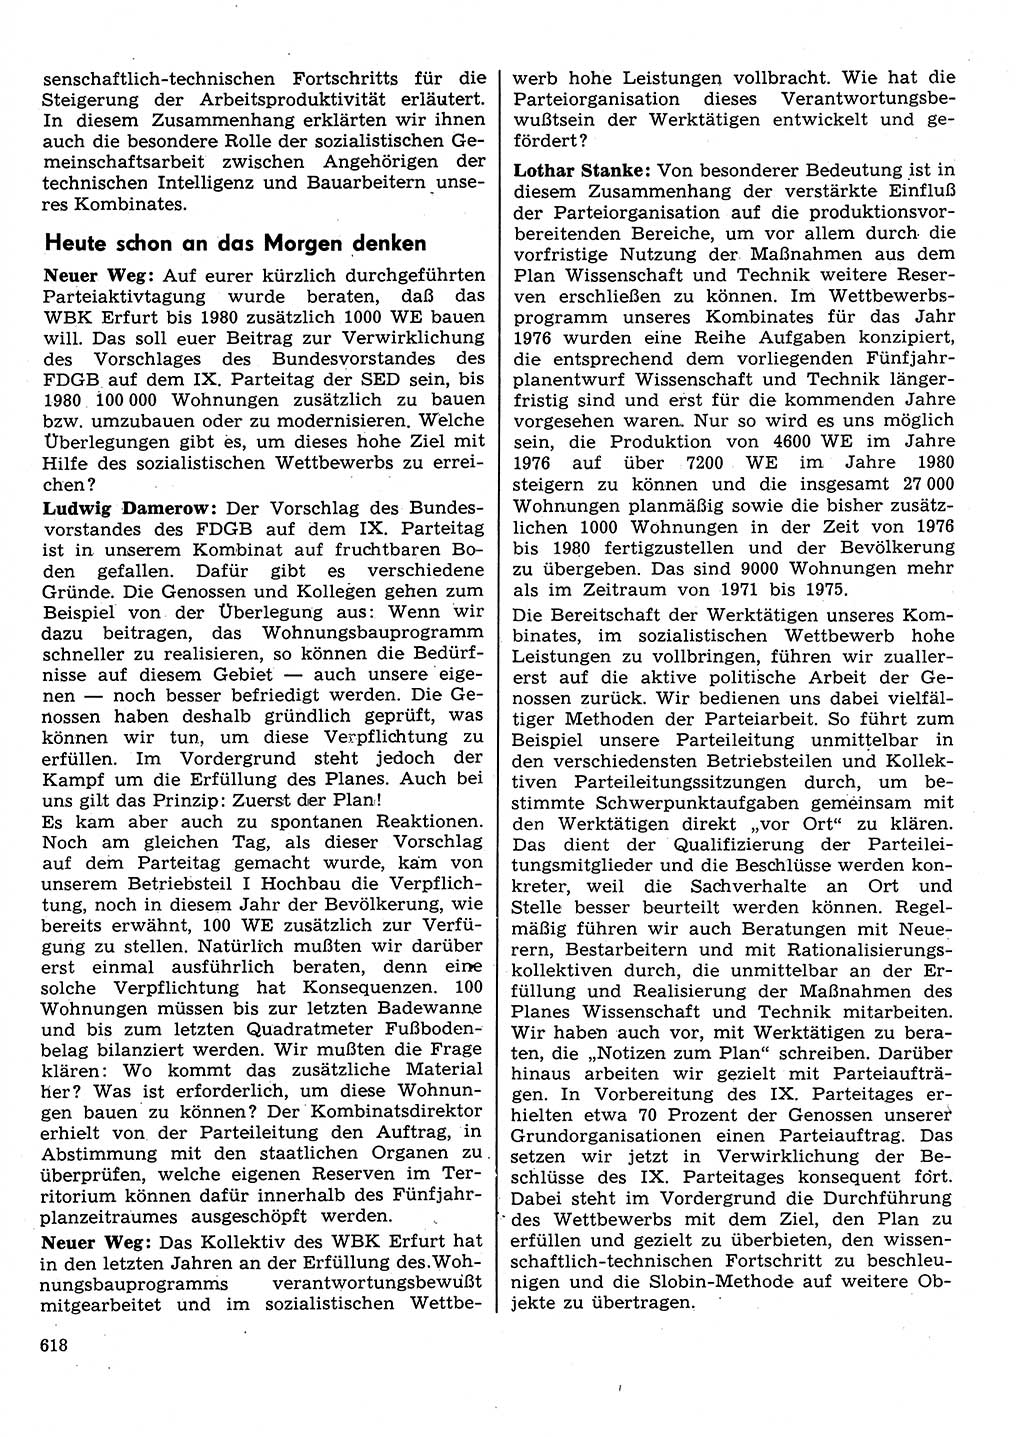 Neuer Weg (NW), Organ des Zentralkomitees (ZK) der SED (Sozialistische Einheitspartei Deutschlands) für Fragen des Parteilebens, 31. Jahrgang [Deutsche Demokratische Republik (DDR)] 1976, Seite 618 (NW ZK SED DDR 1976, S. 618)